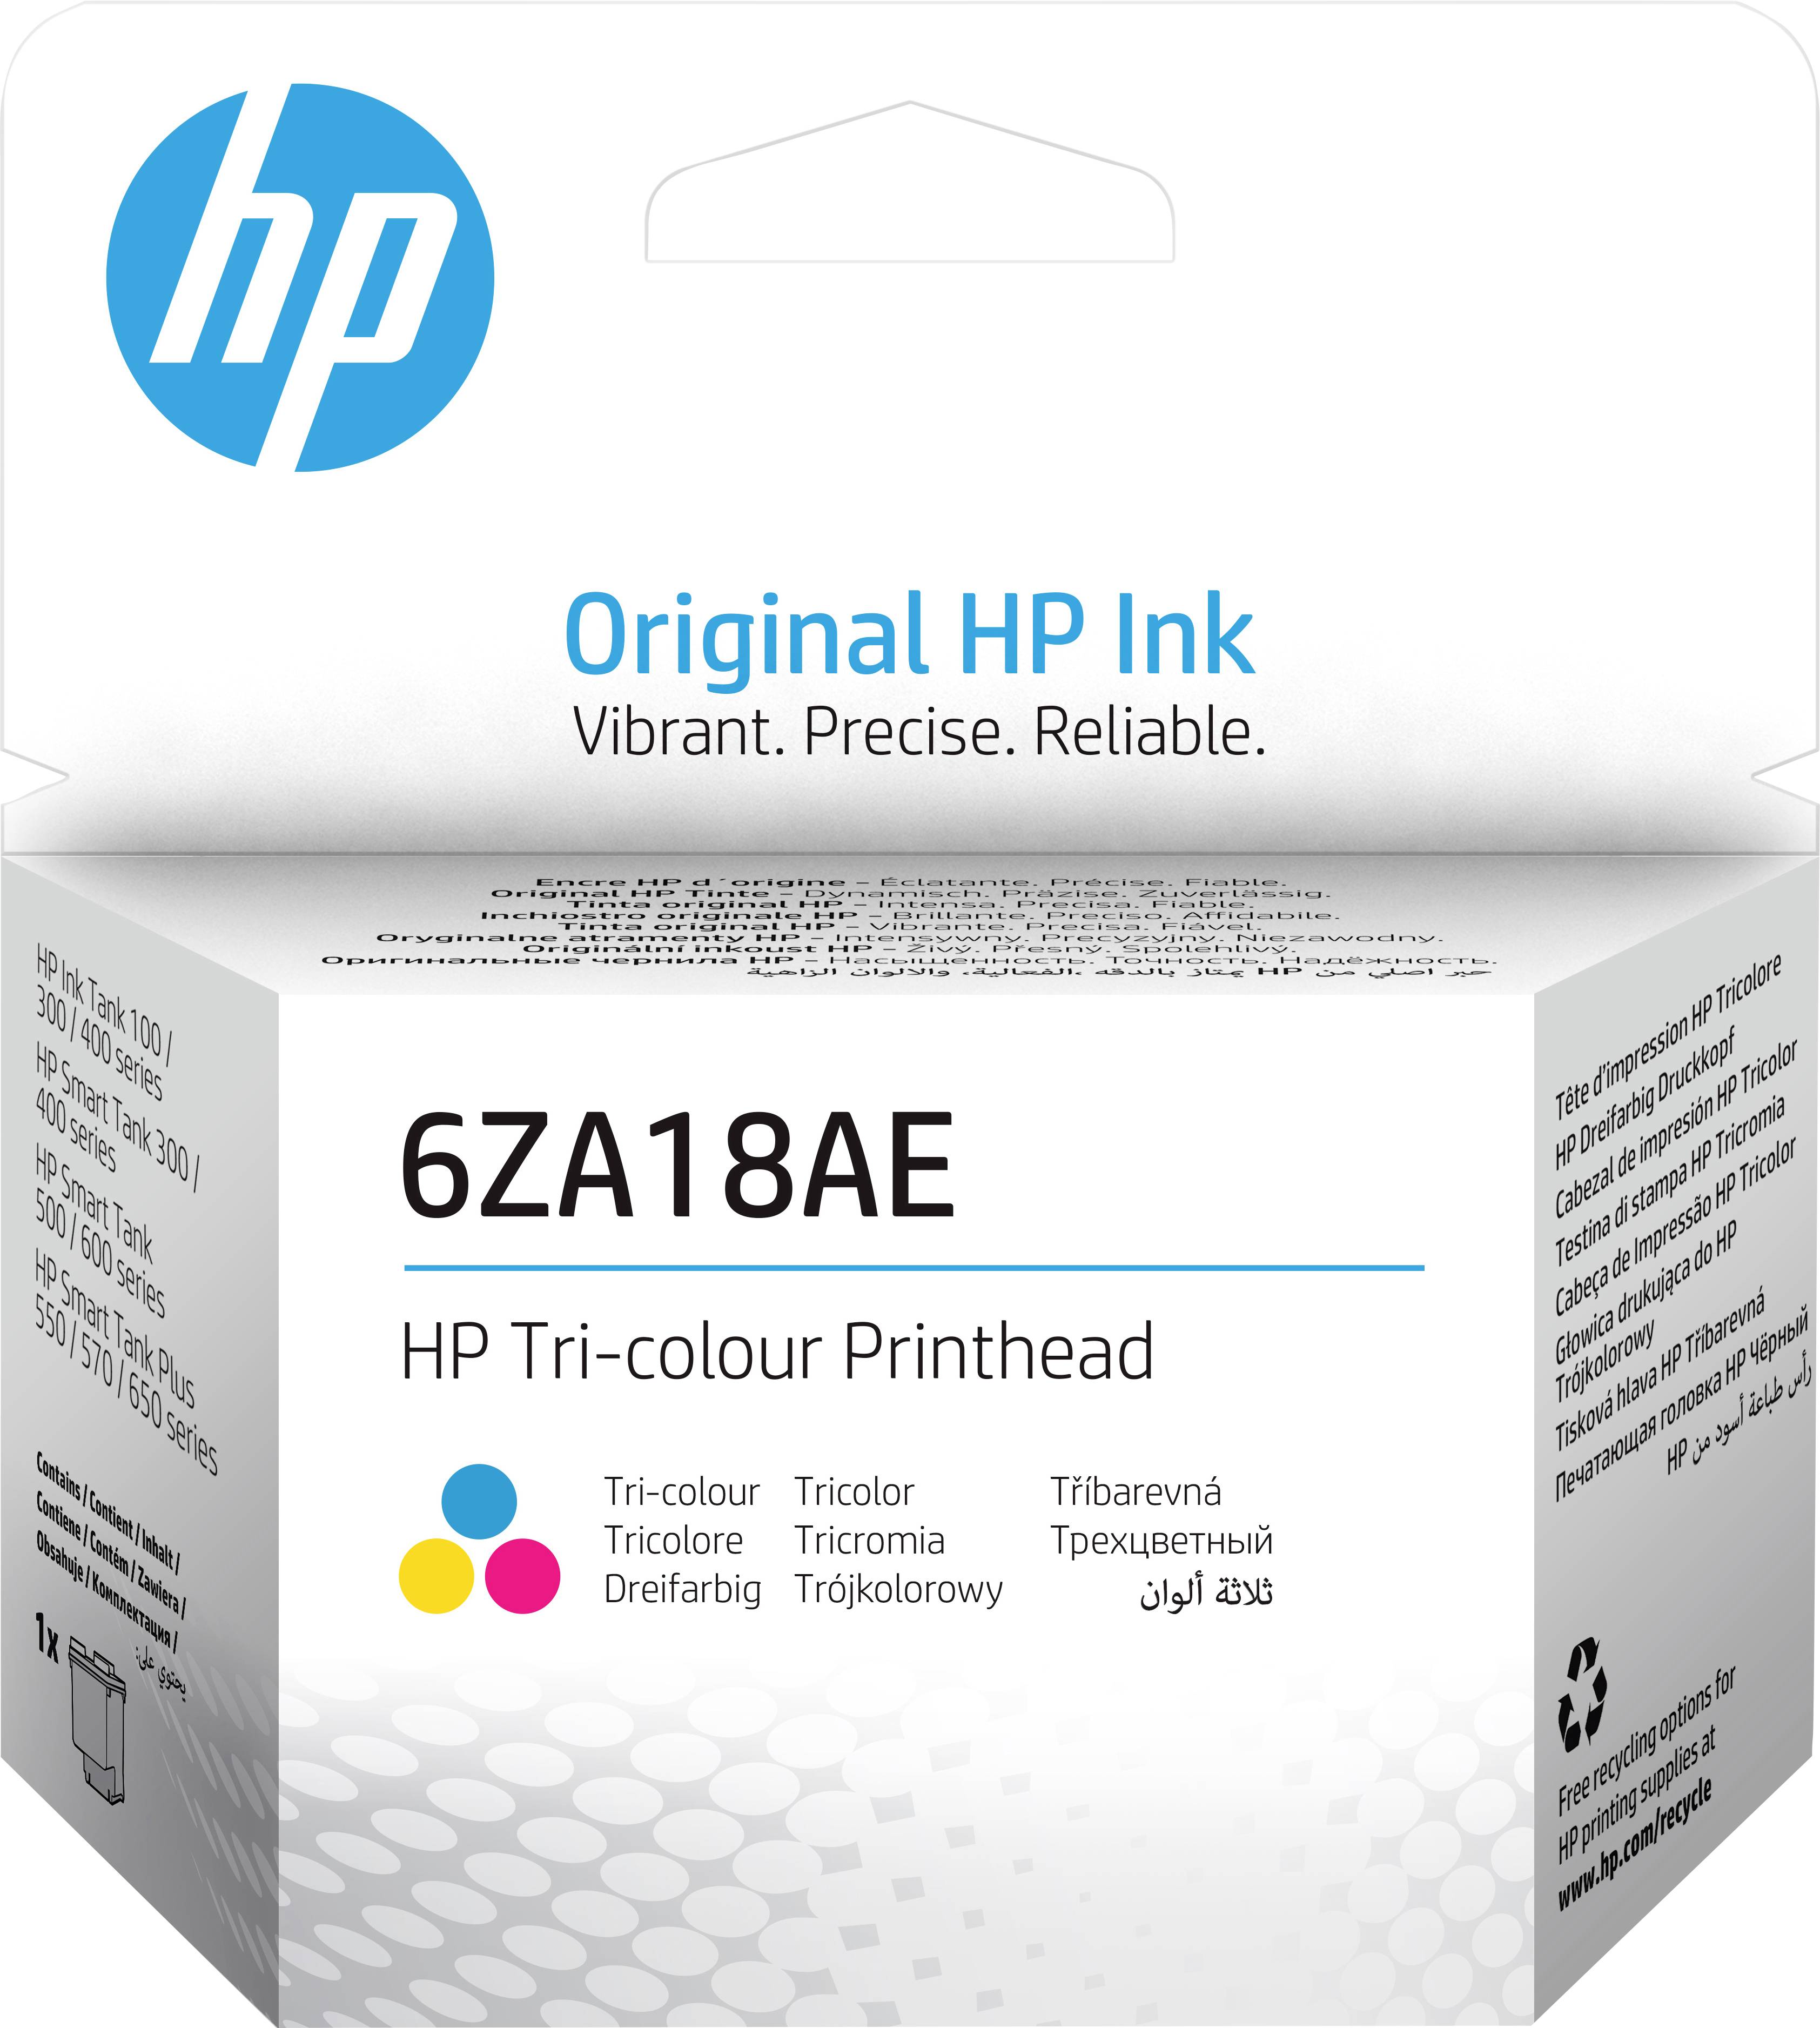 HP Tri-Color Printhead